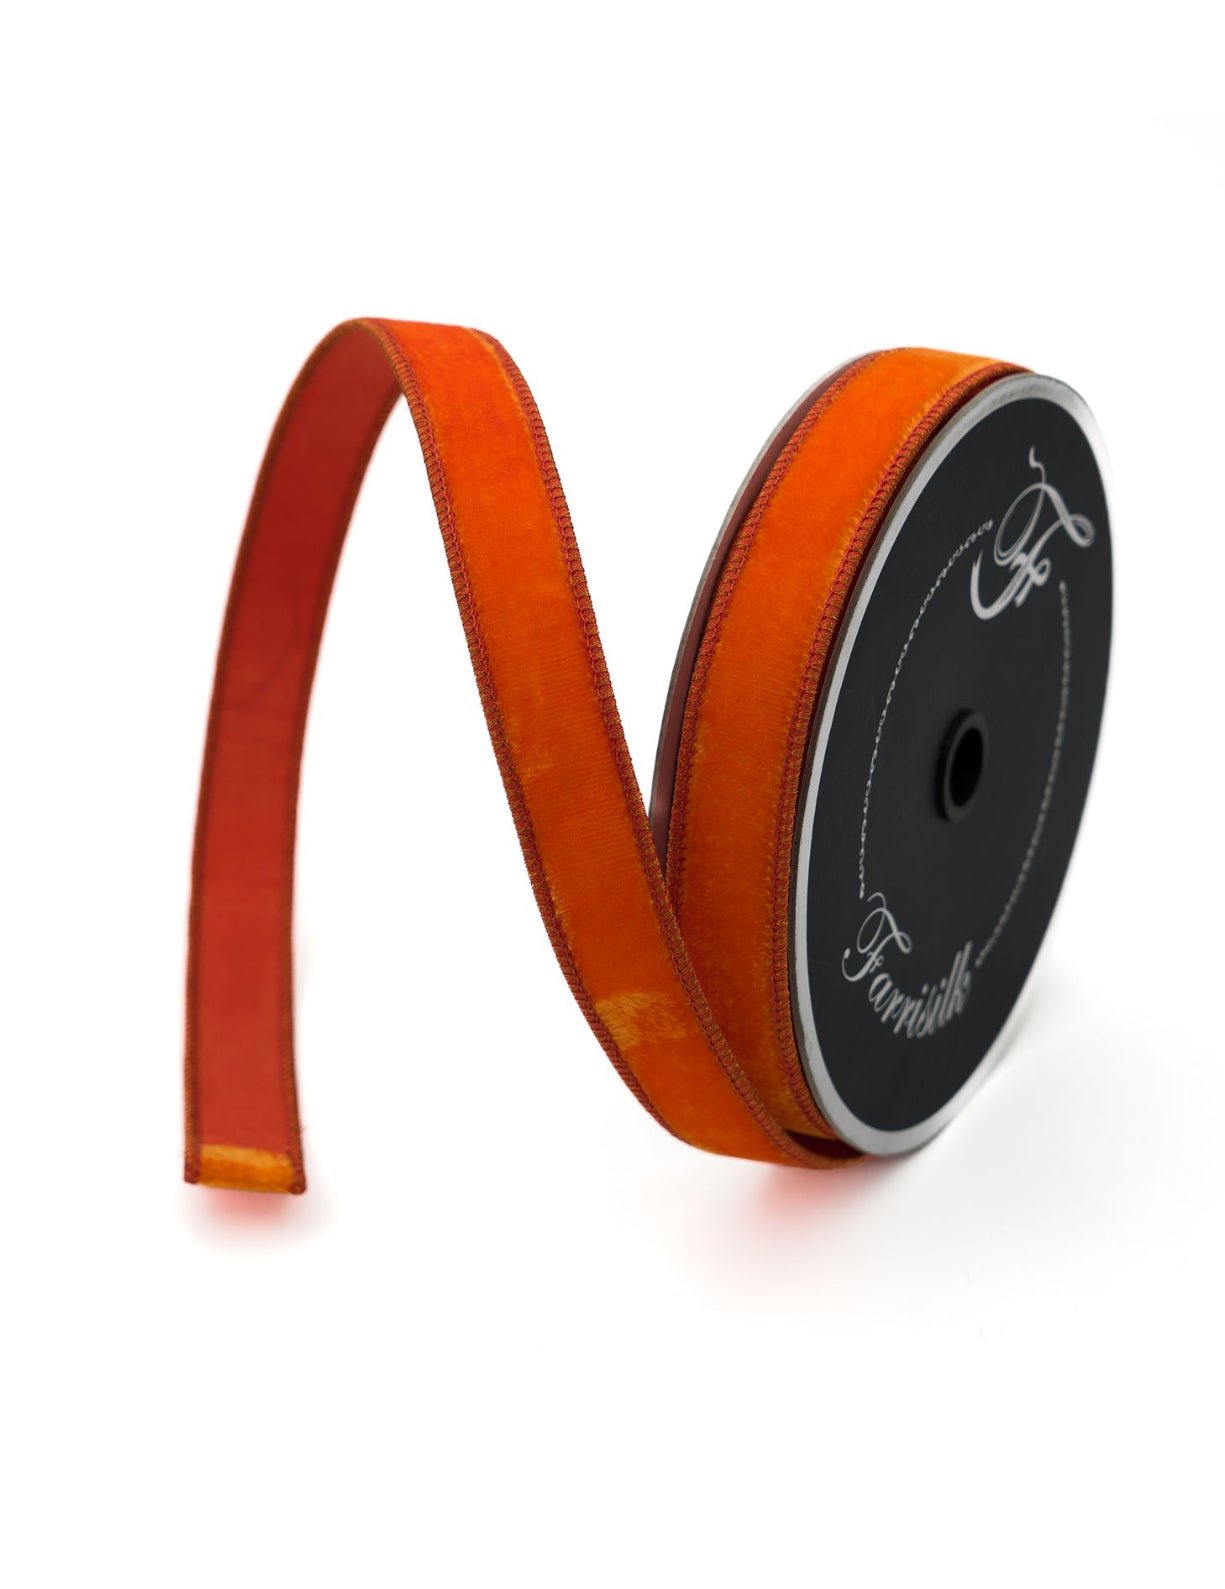 Orange plush velvet luster 1” farrisilk wired ribbon - Greenery MarketRibbons & TrimRV001-52